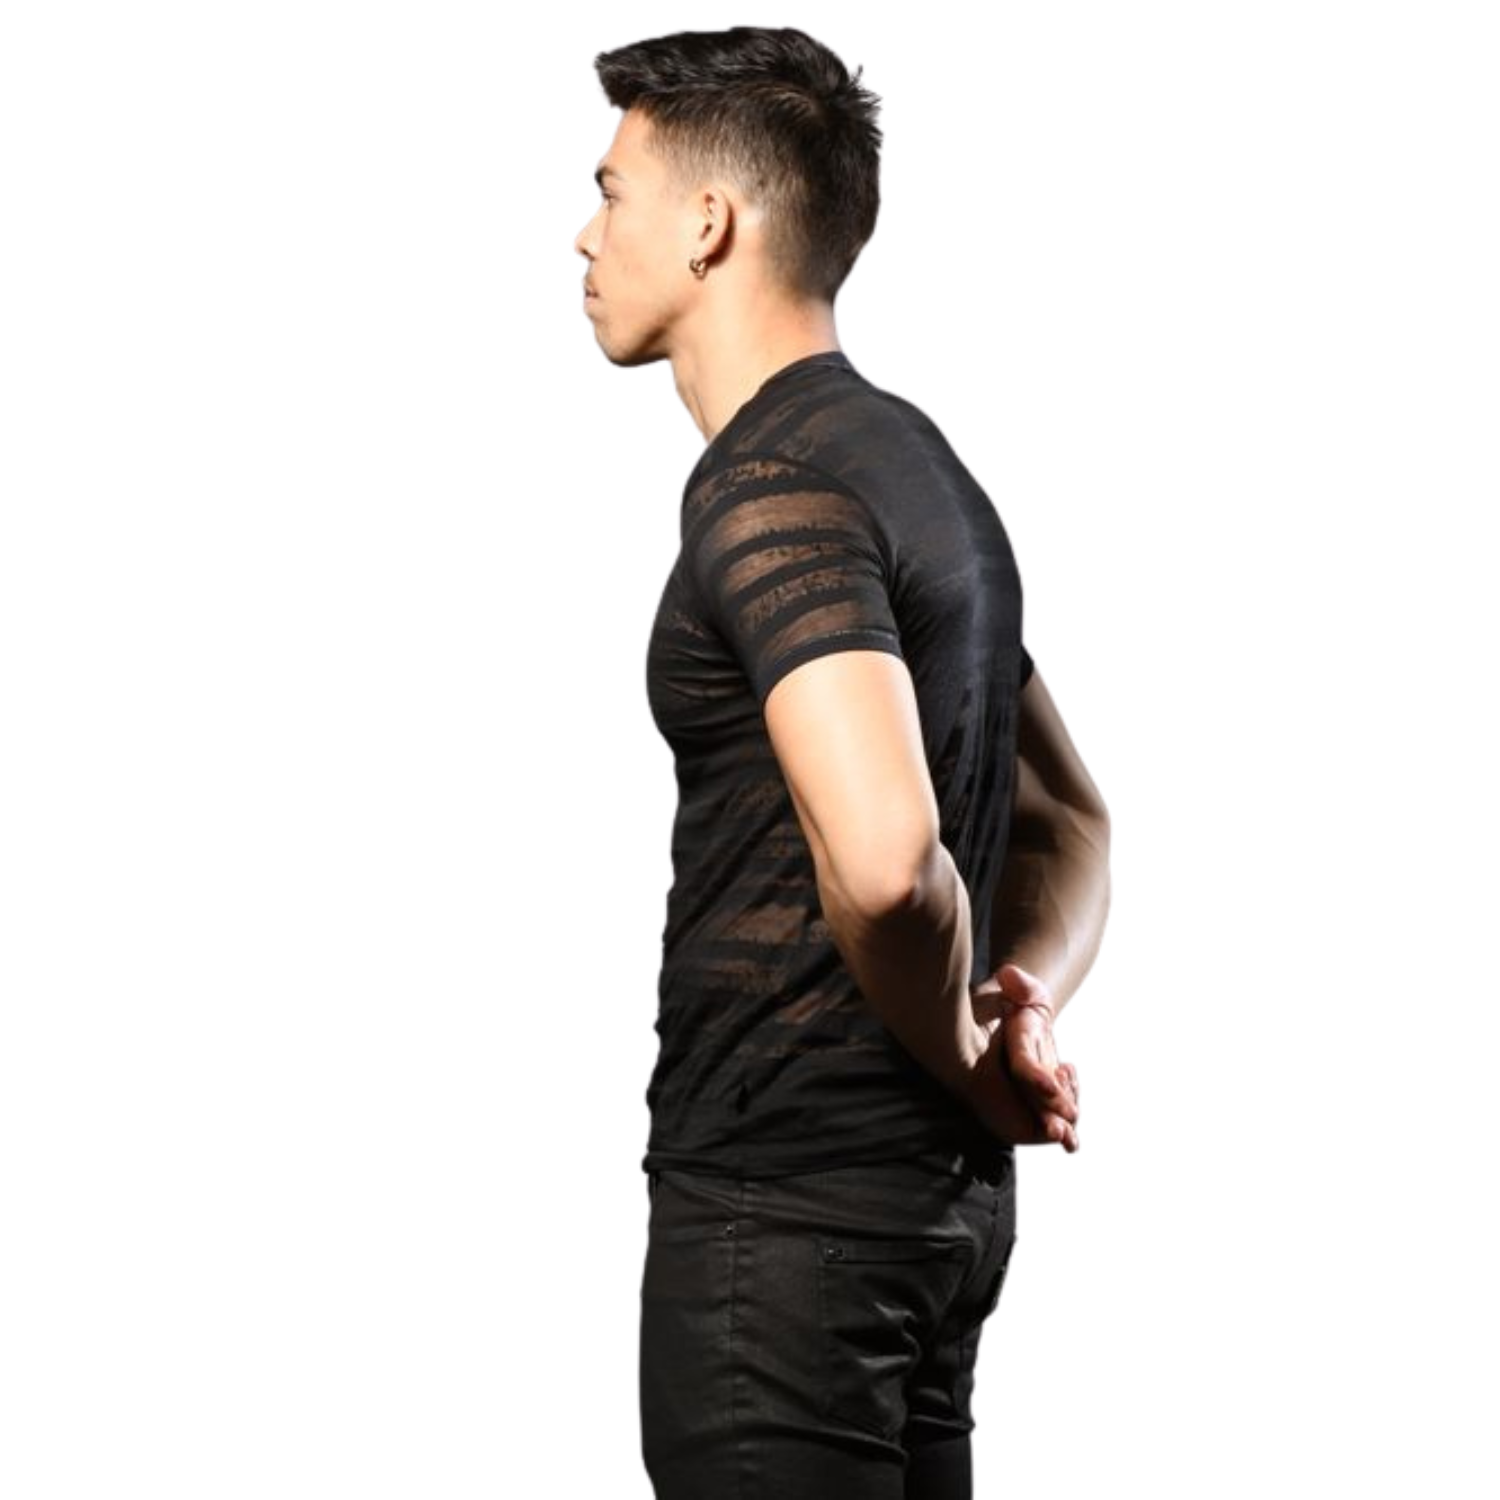 Zwarte Burnout Stripe Shirt van het merk Andrew Christian perfect voor gay mannen en te koop bij Flavourez.